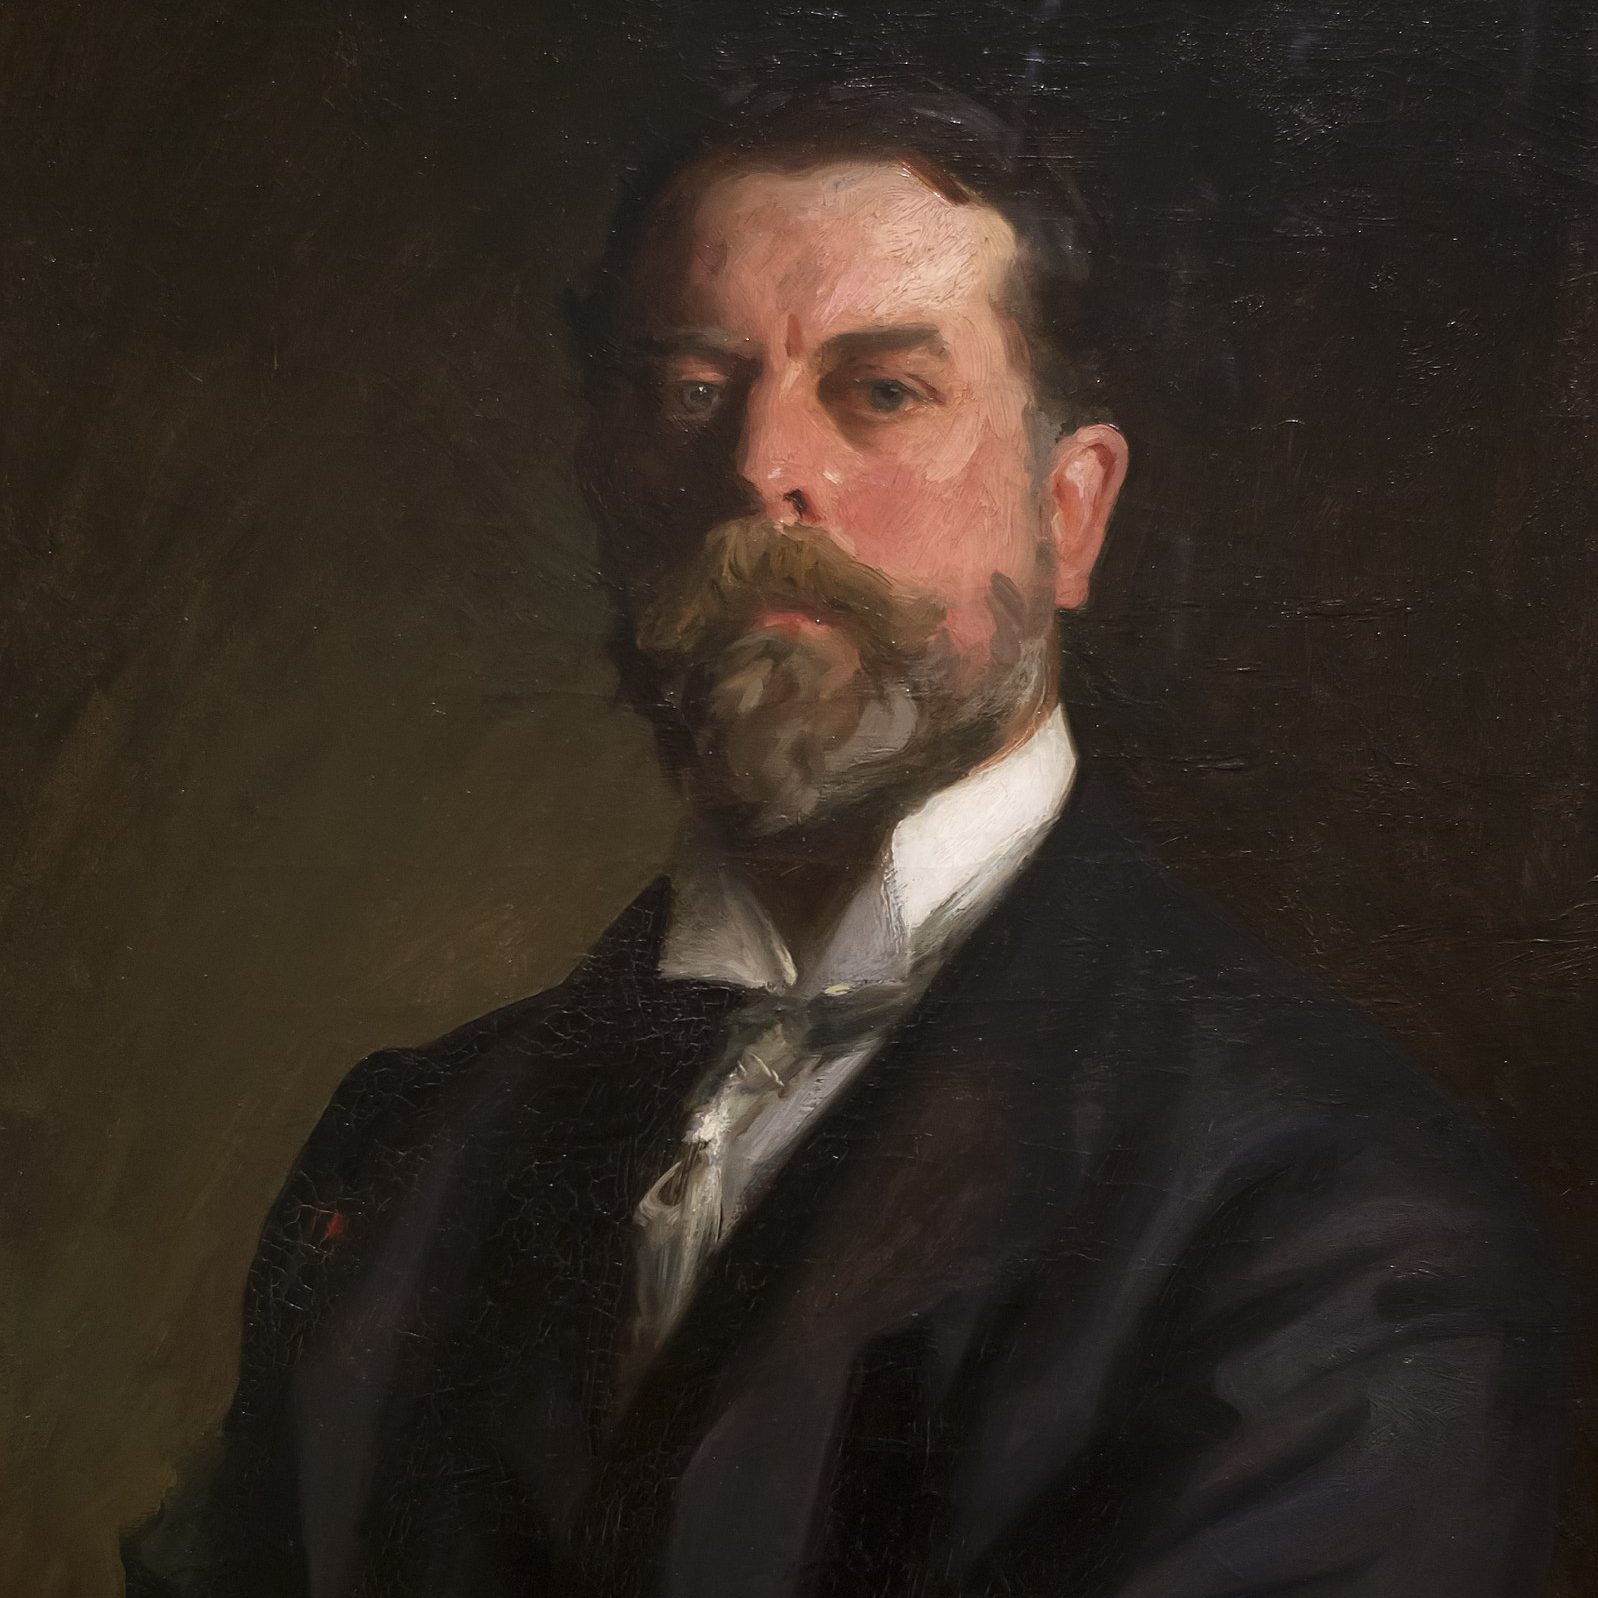 John Singer Sargent / Self-Portrait / 1906 / (c) John Singer Sargent